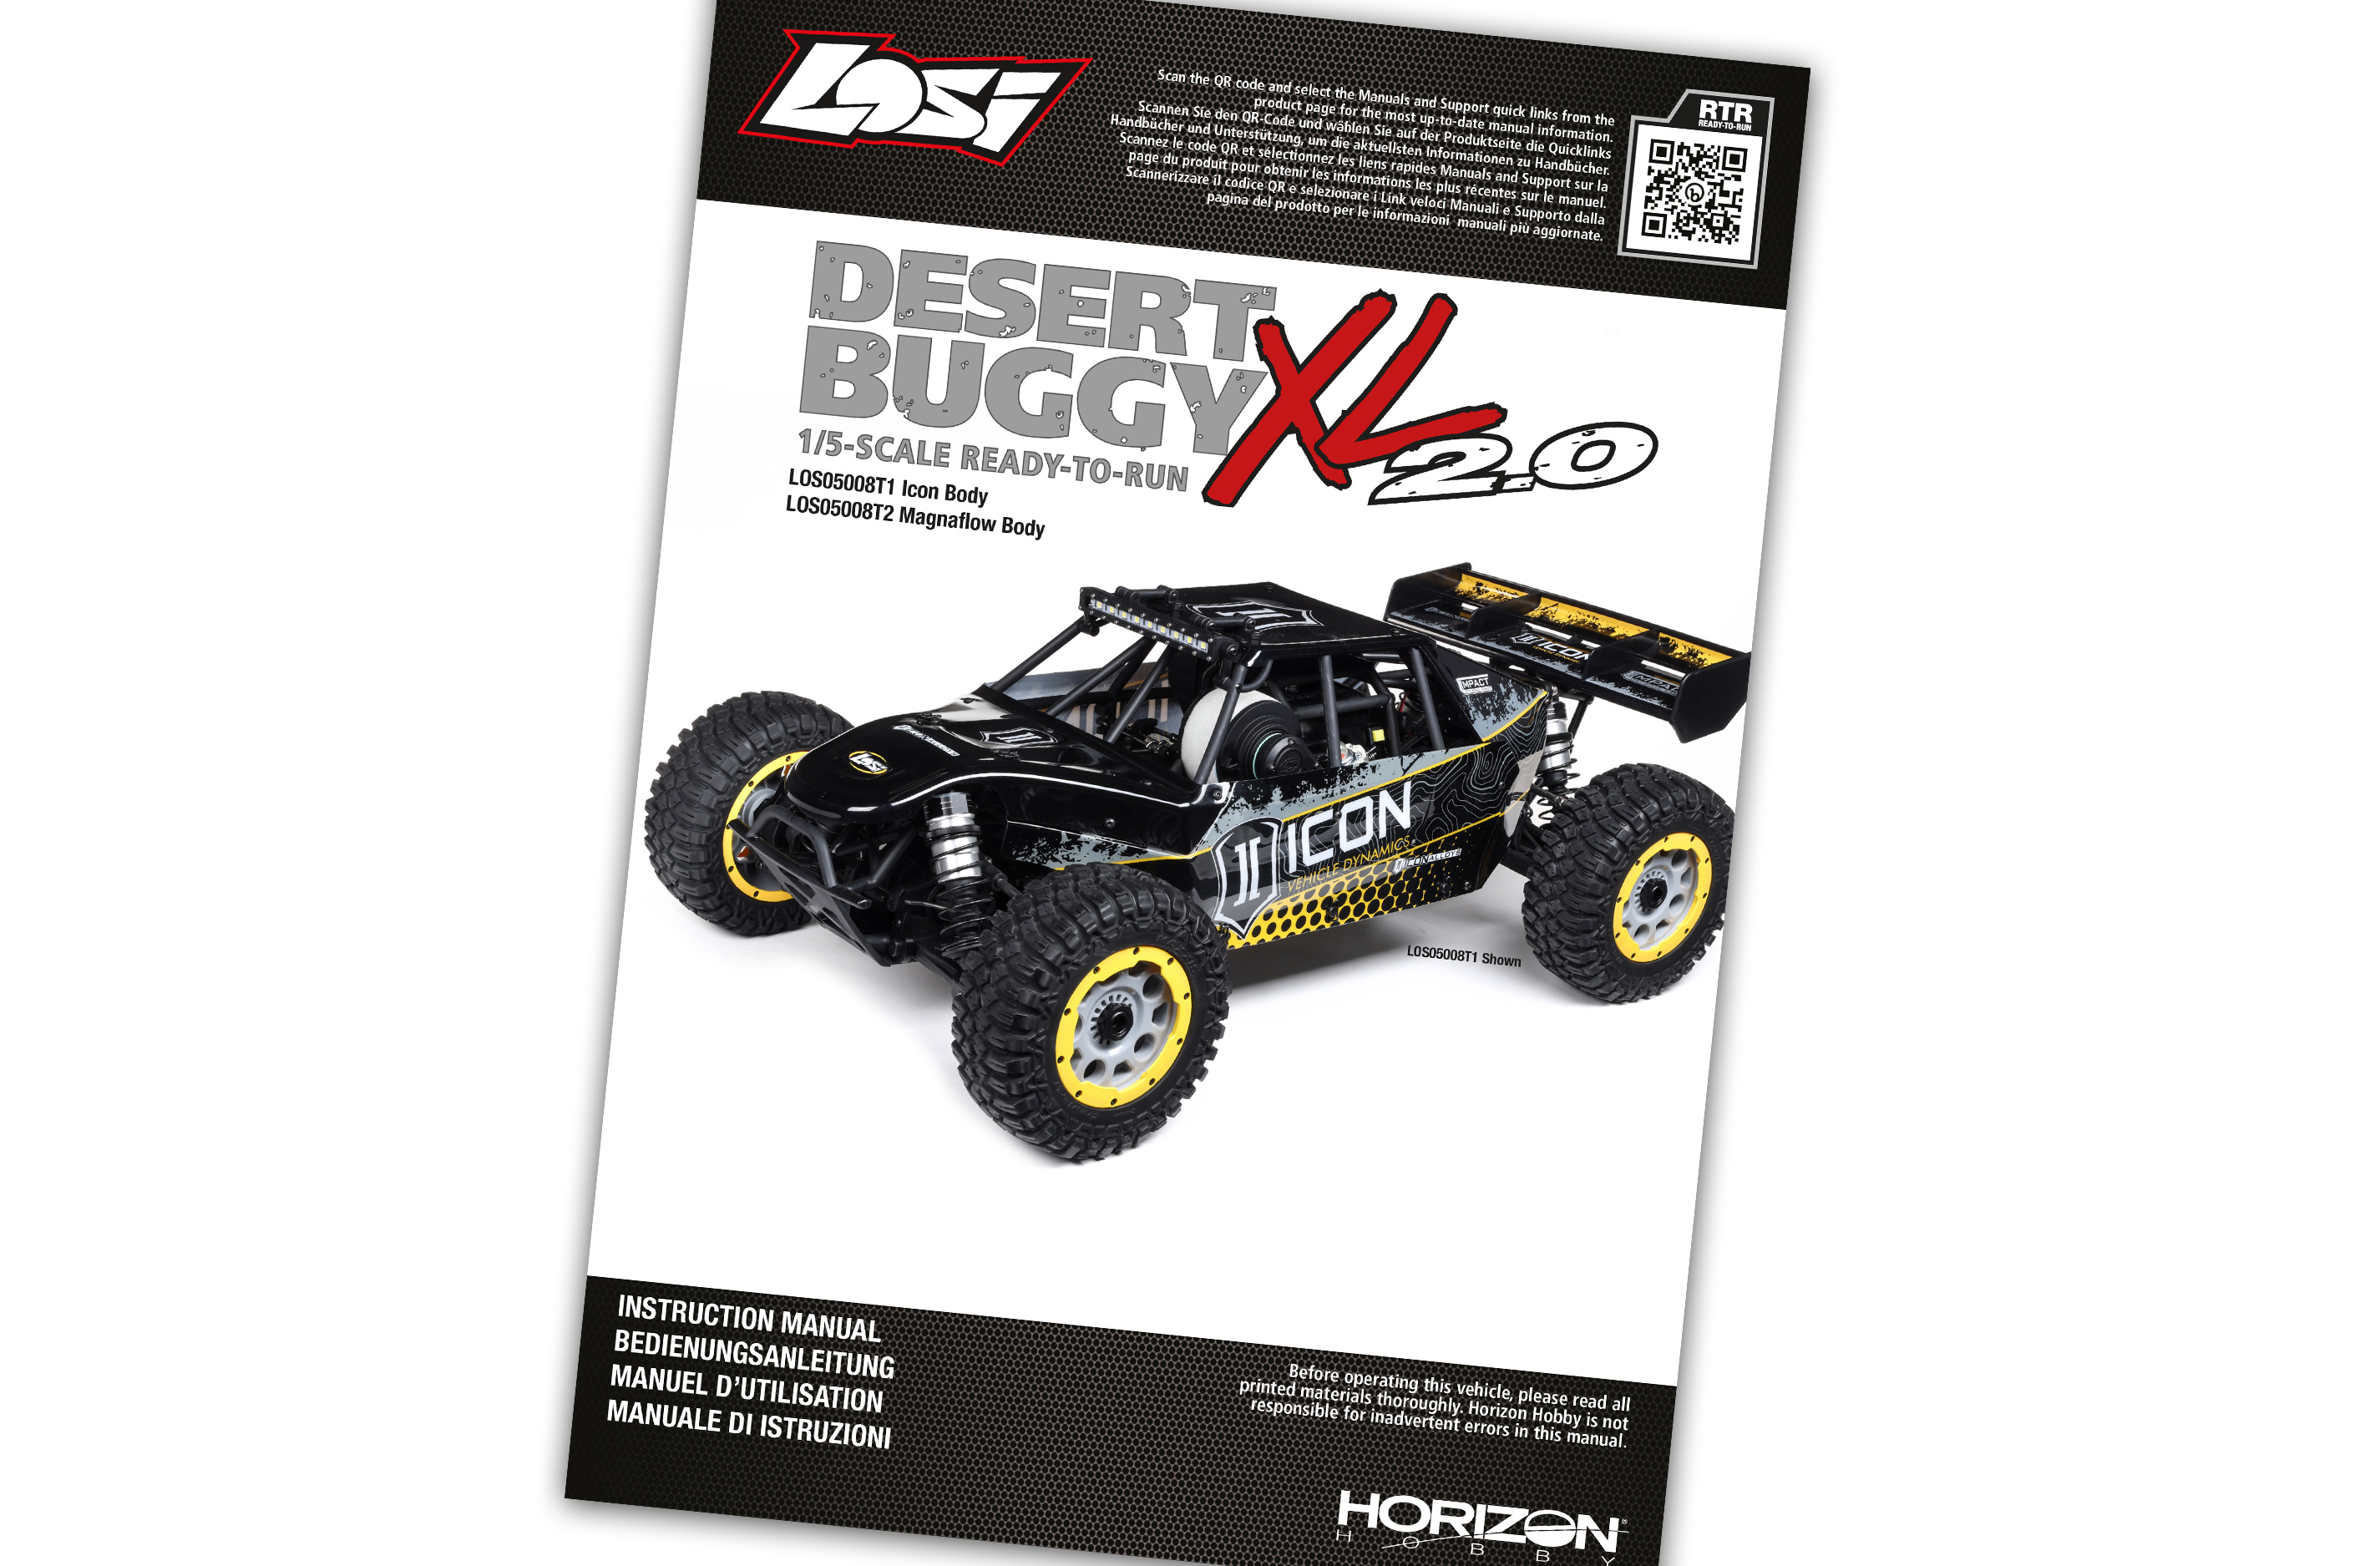 LOS05001/03 Bedienungsanleitung für Desert Buggy XL 2.0